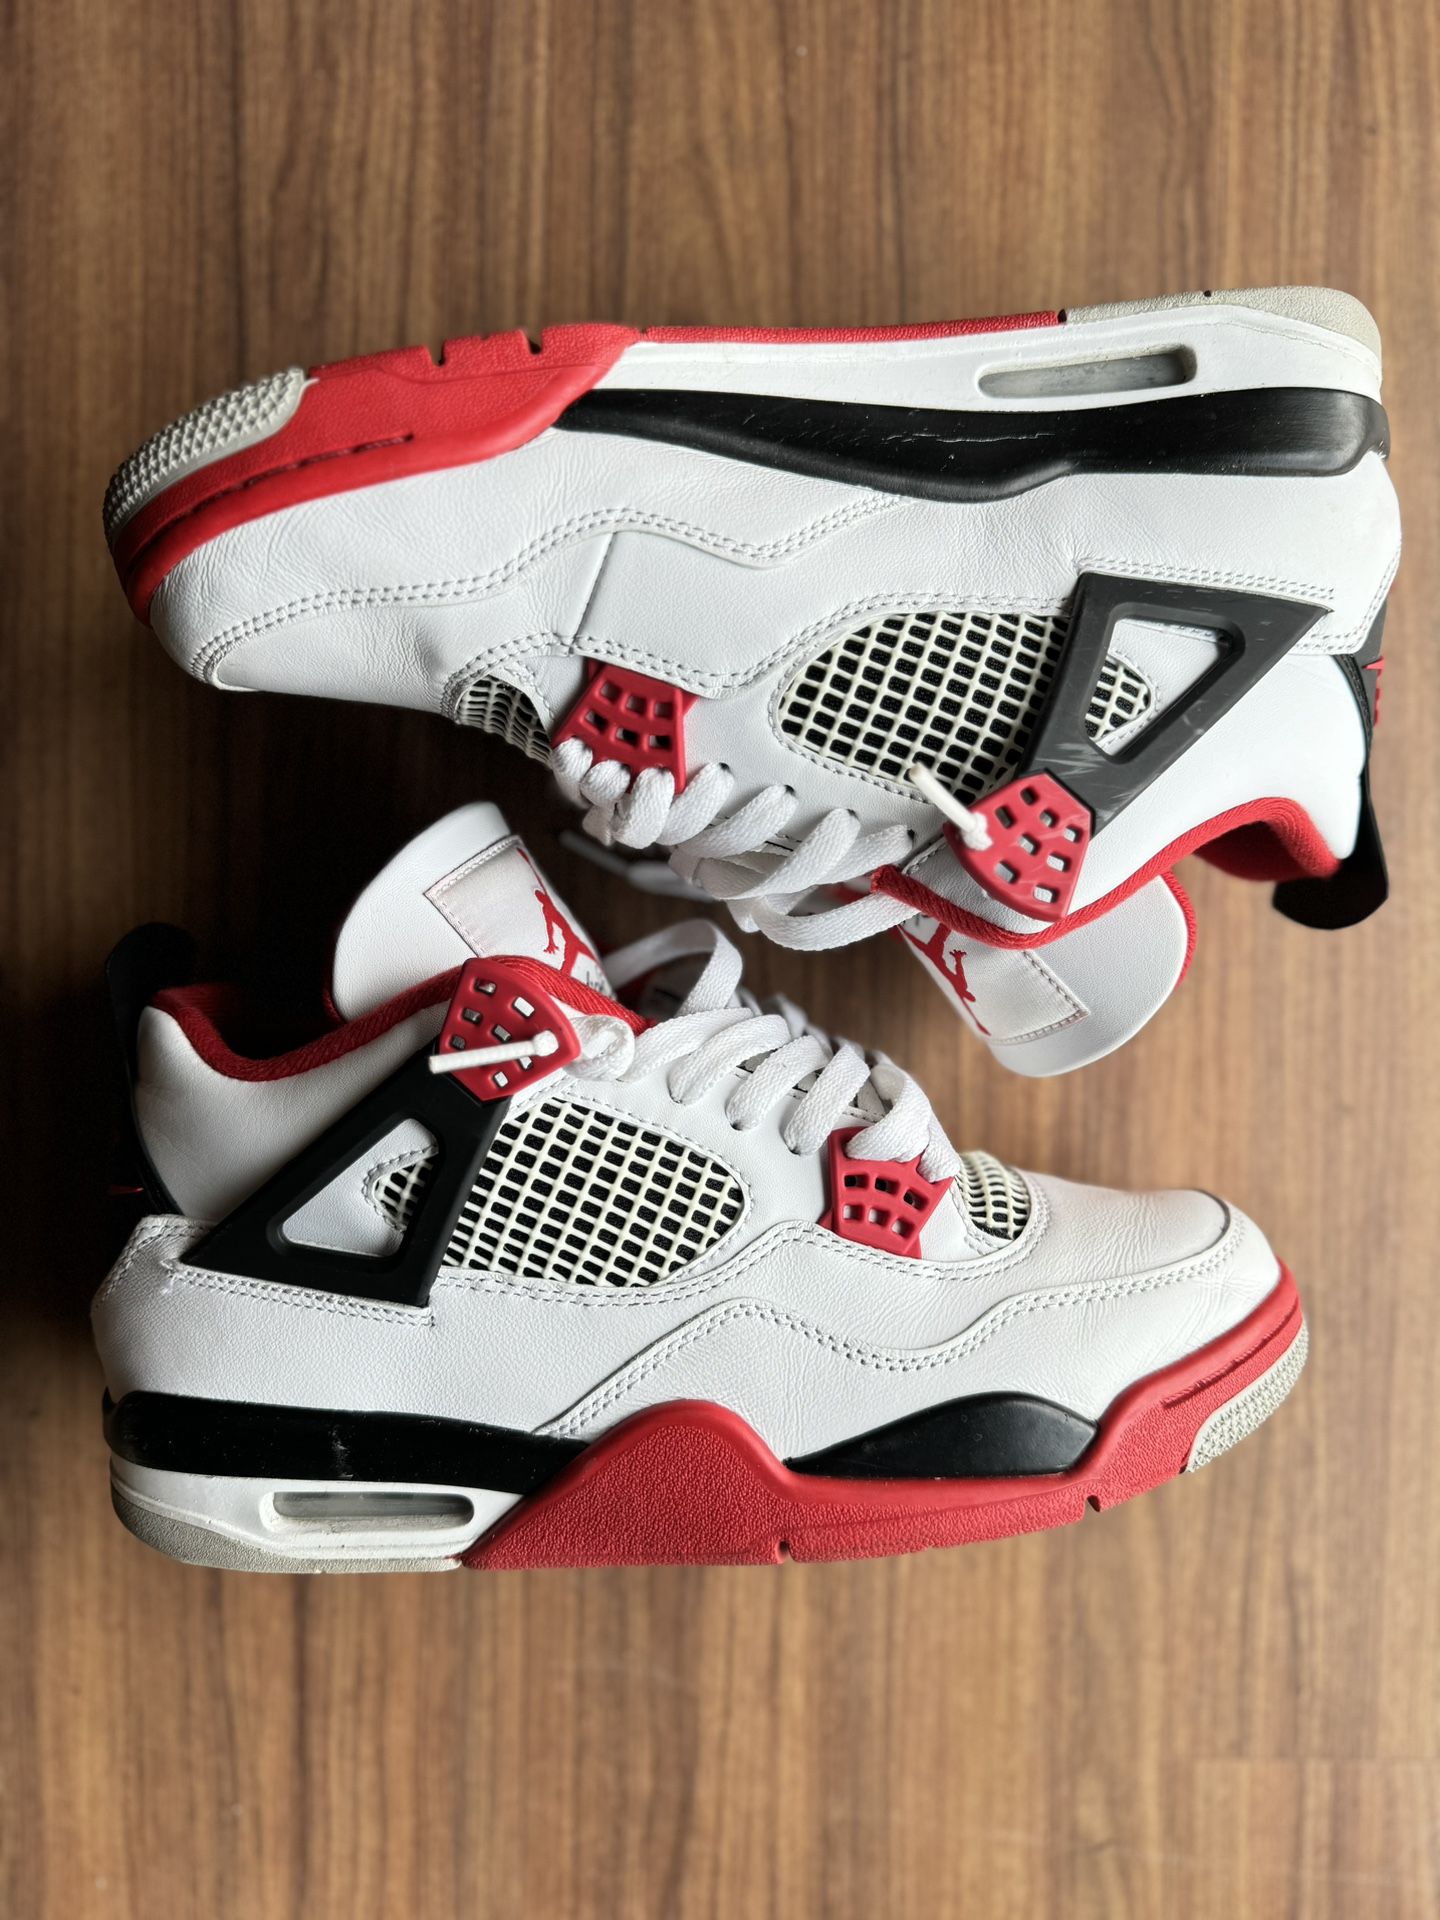 Jordan Fire Red 4 Size 8.5